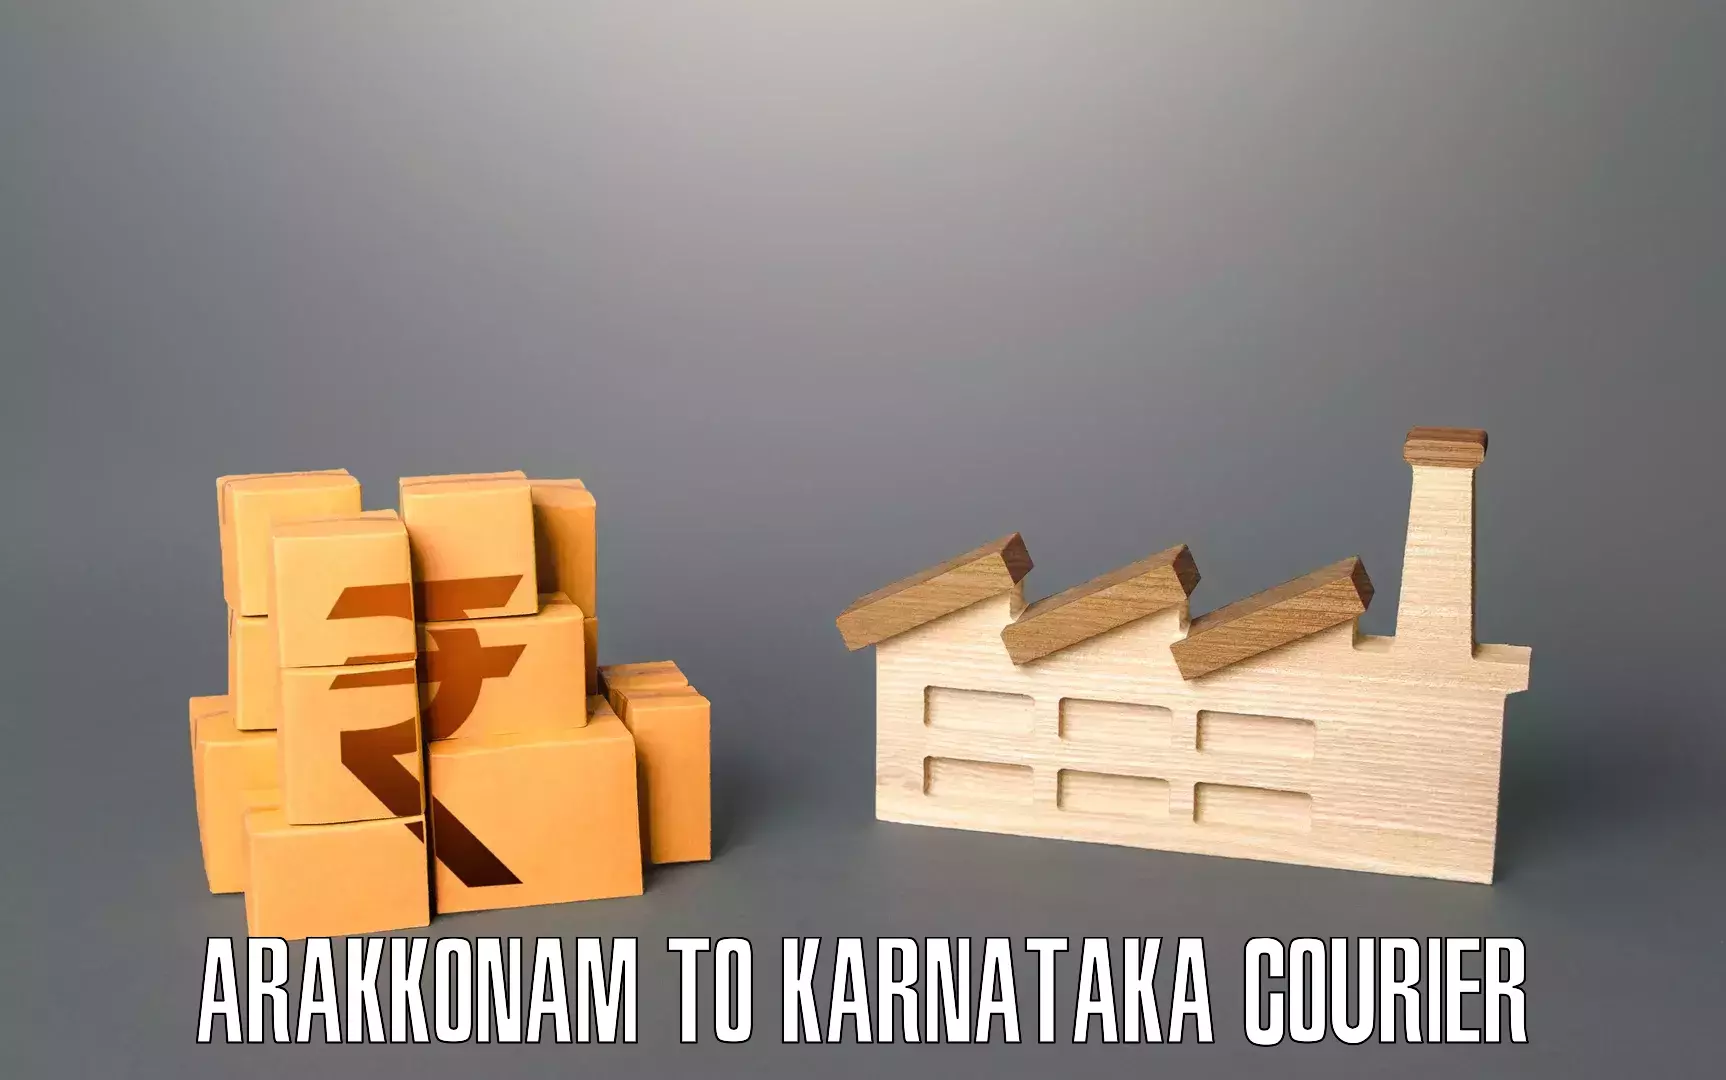 Professional moving company Arakkonam to Udupi